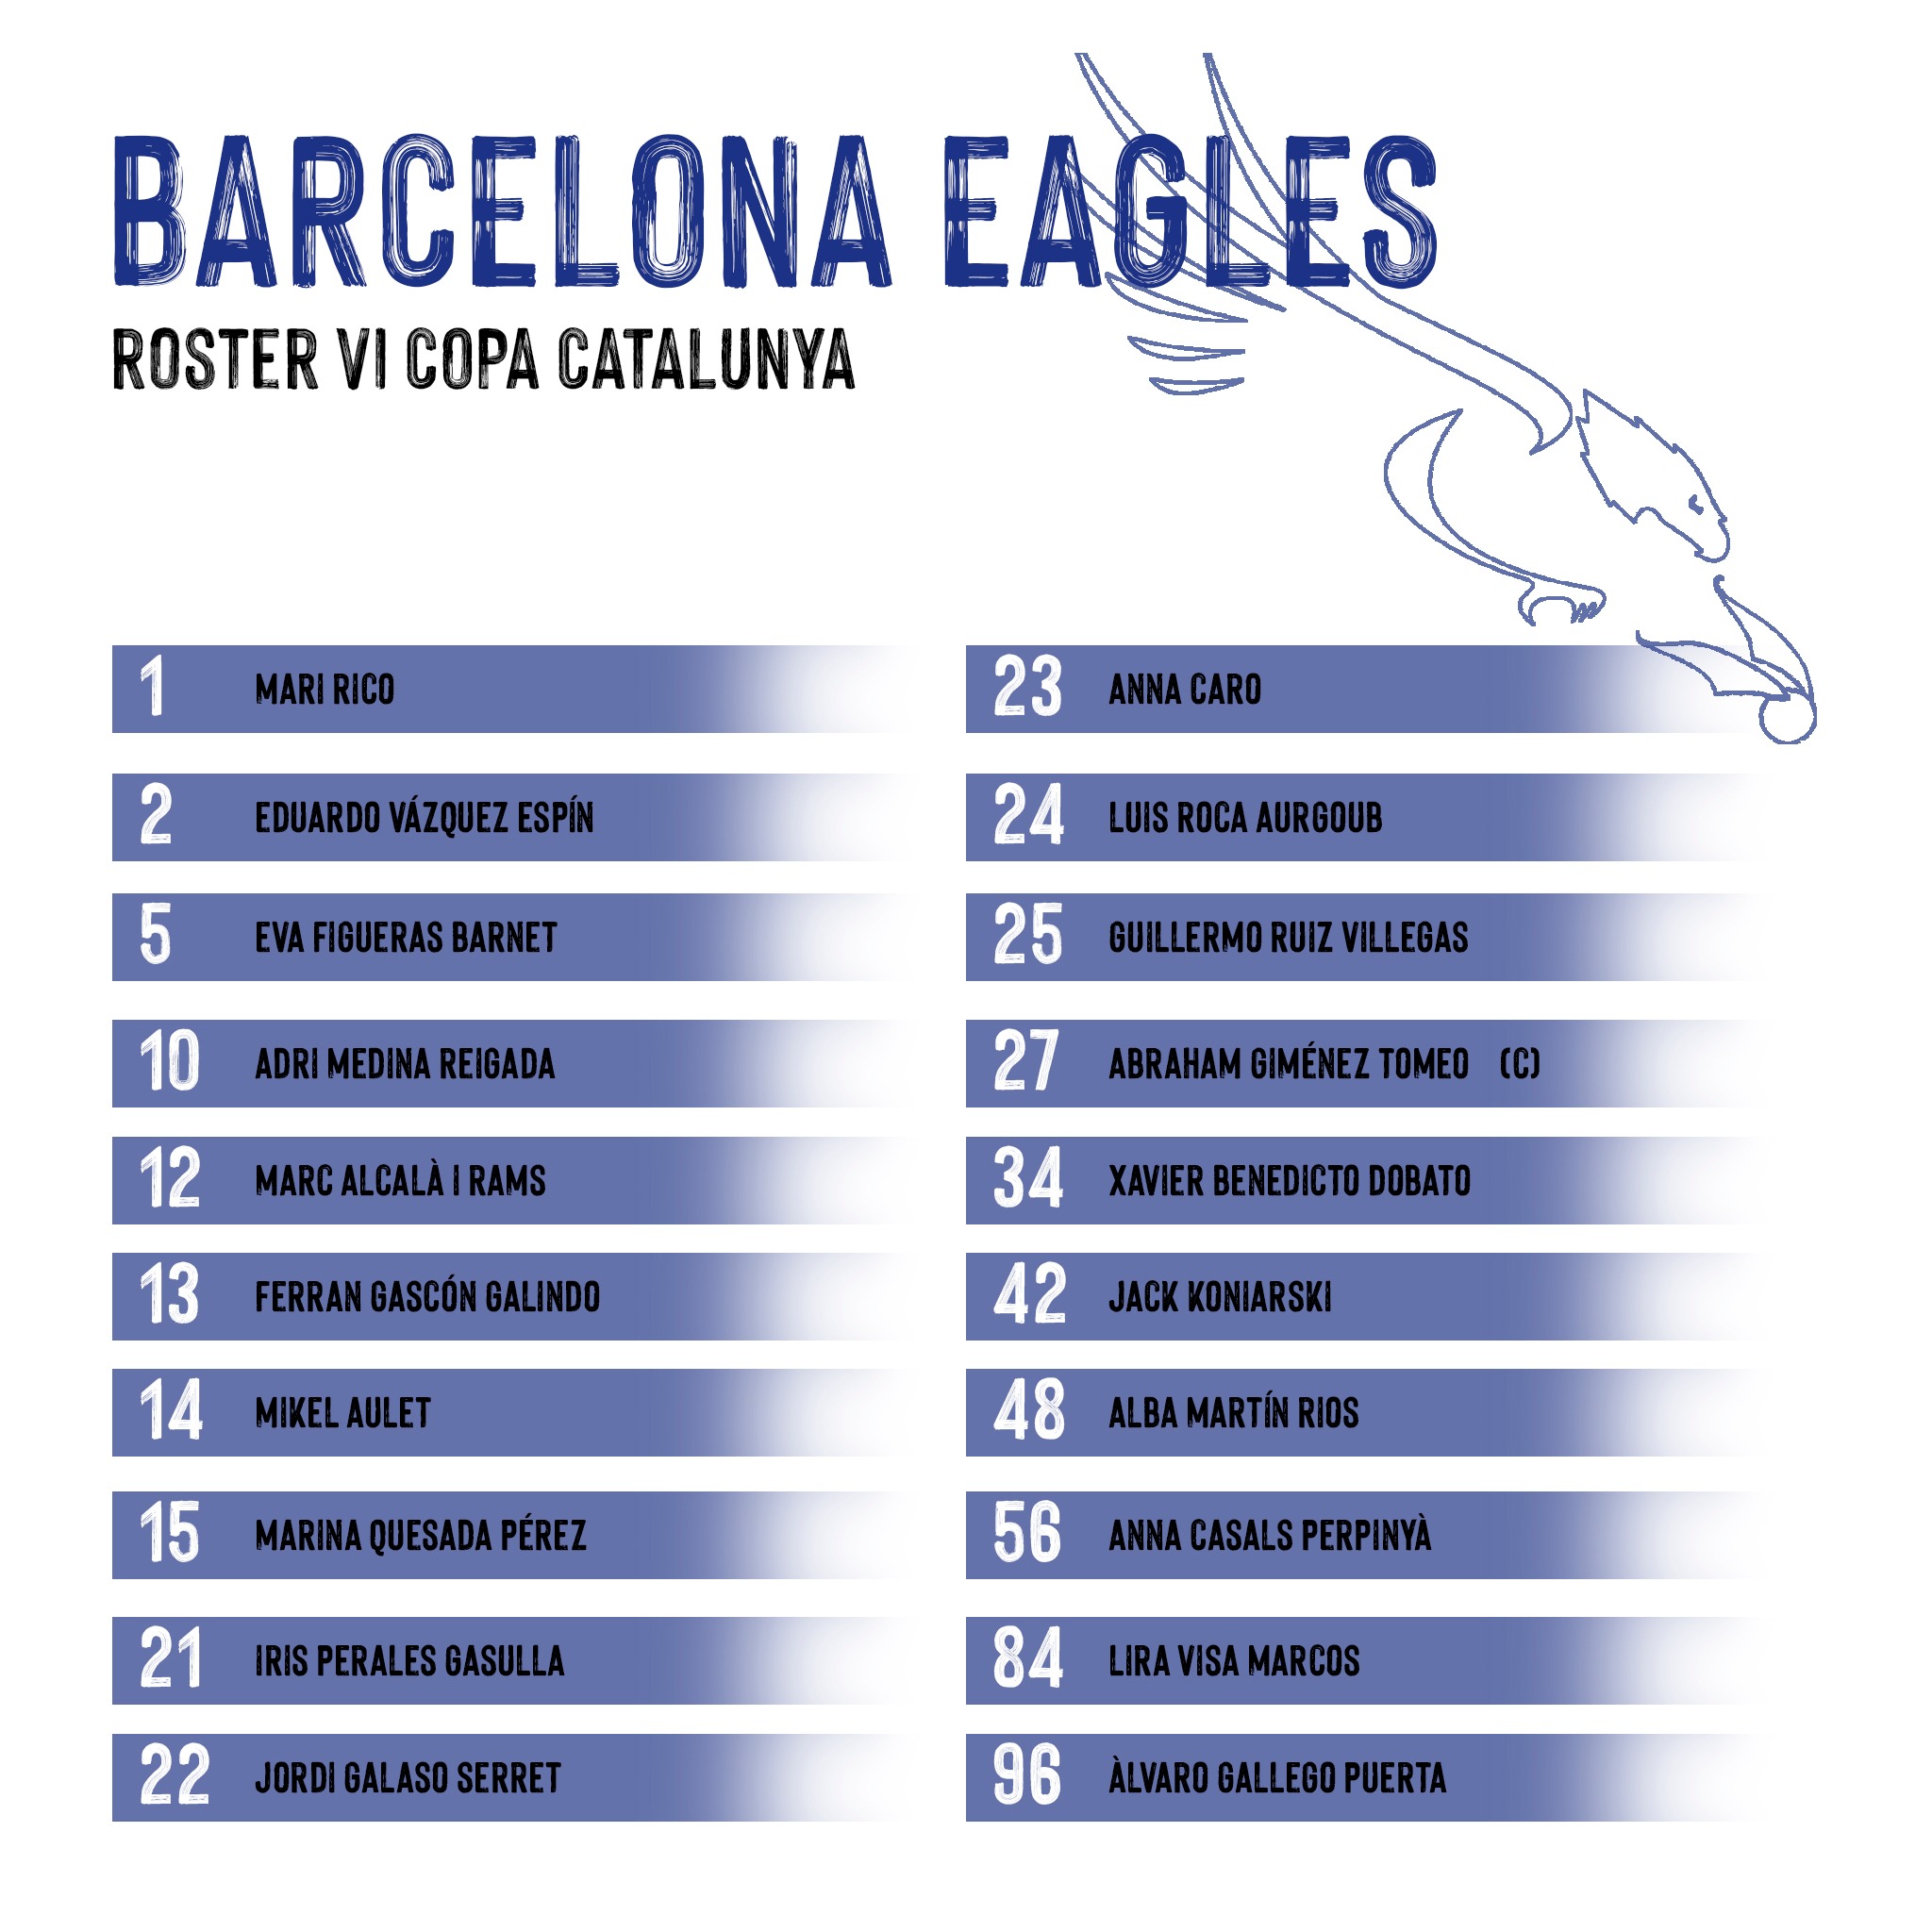 Roster VI Copa Catalunya Eagles